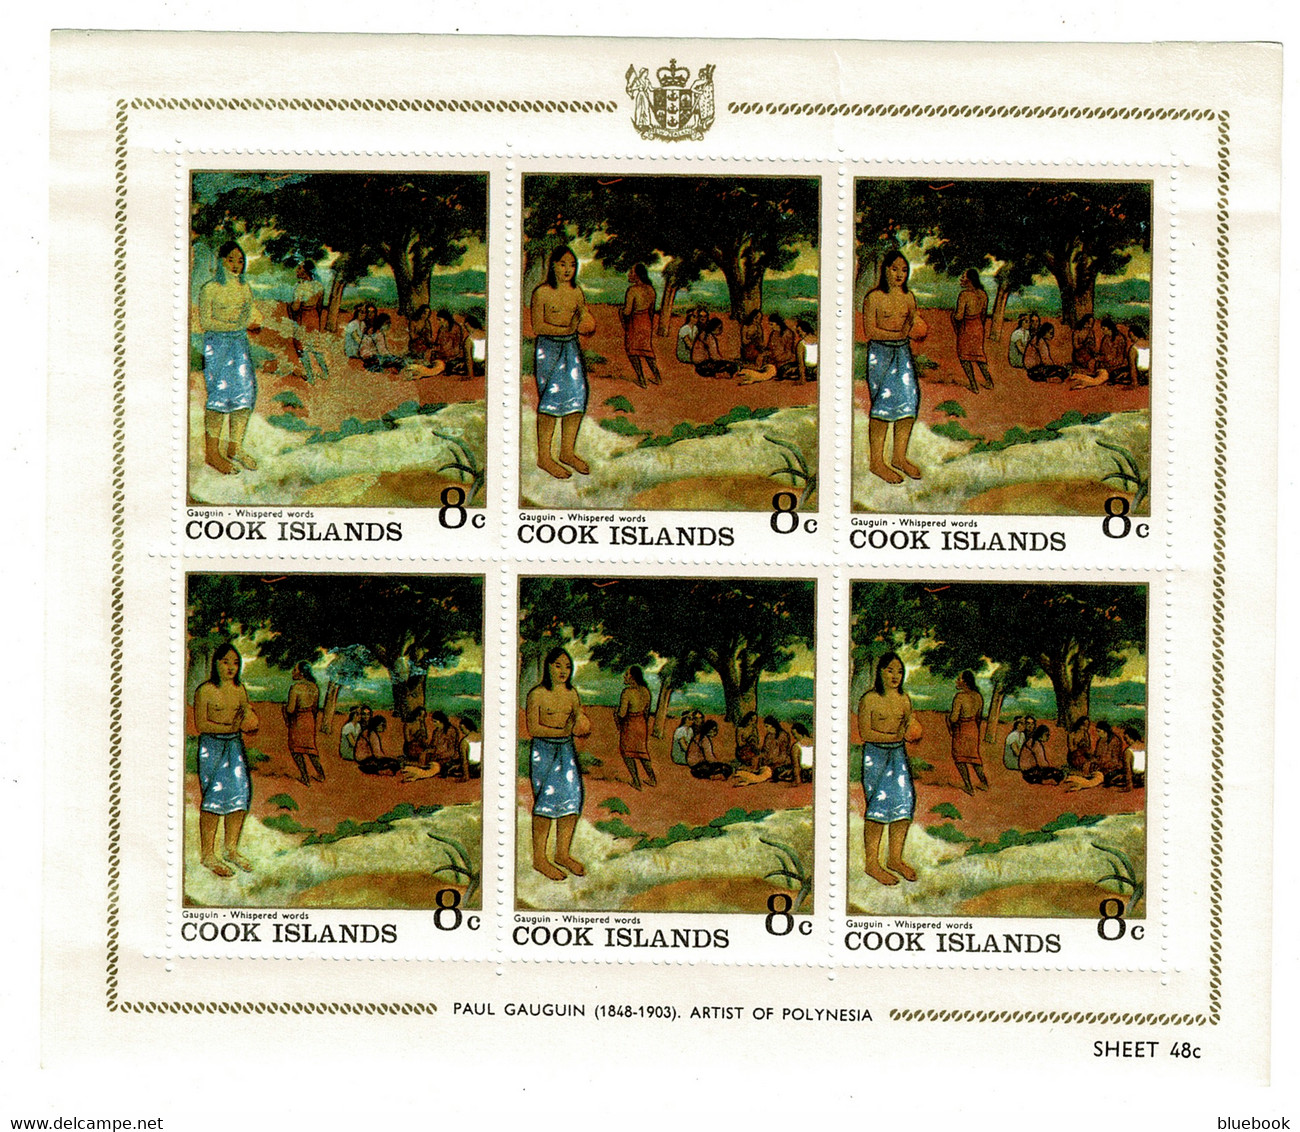 Ref 1474  - Cook Islands - 7 X Miniature Sheets MHH - Paul Gauguin Artist - Art Theme - Cook Islands